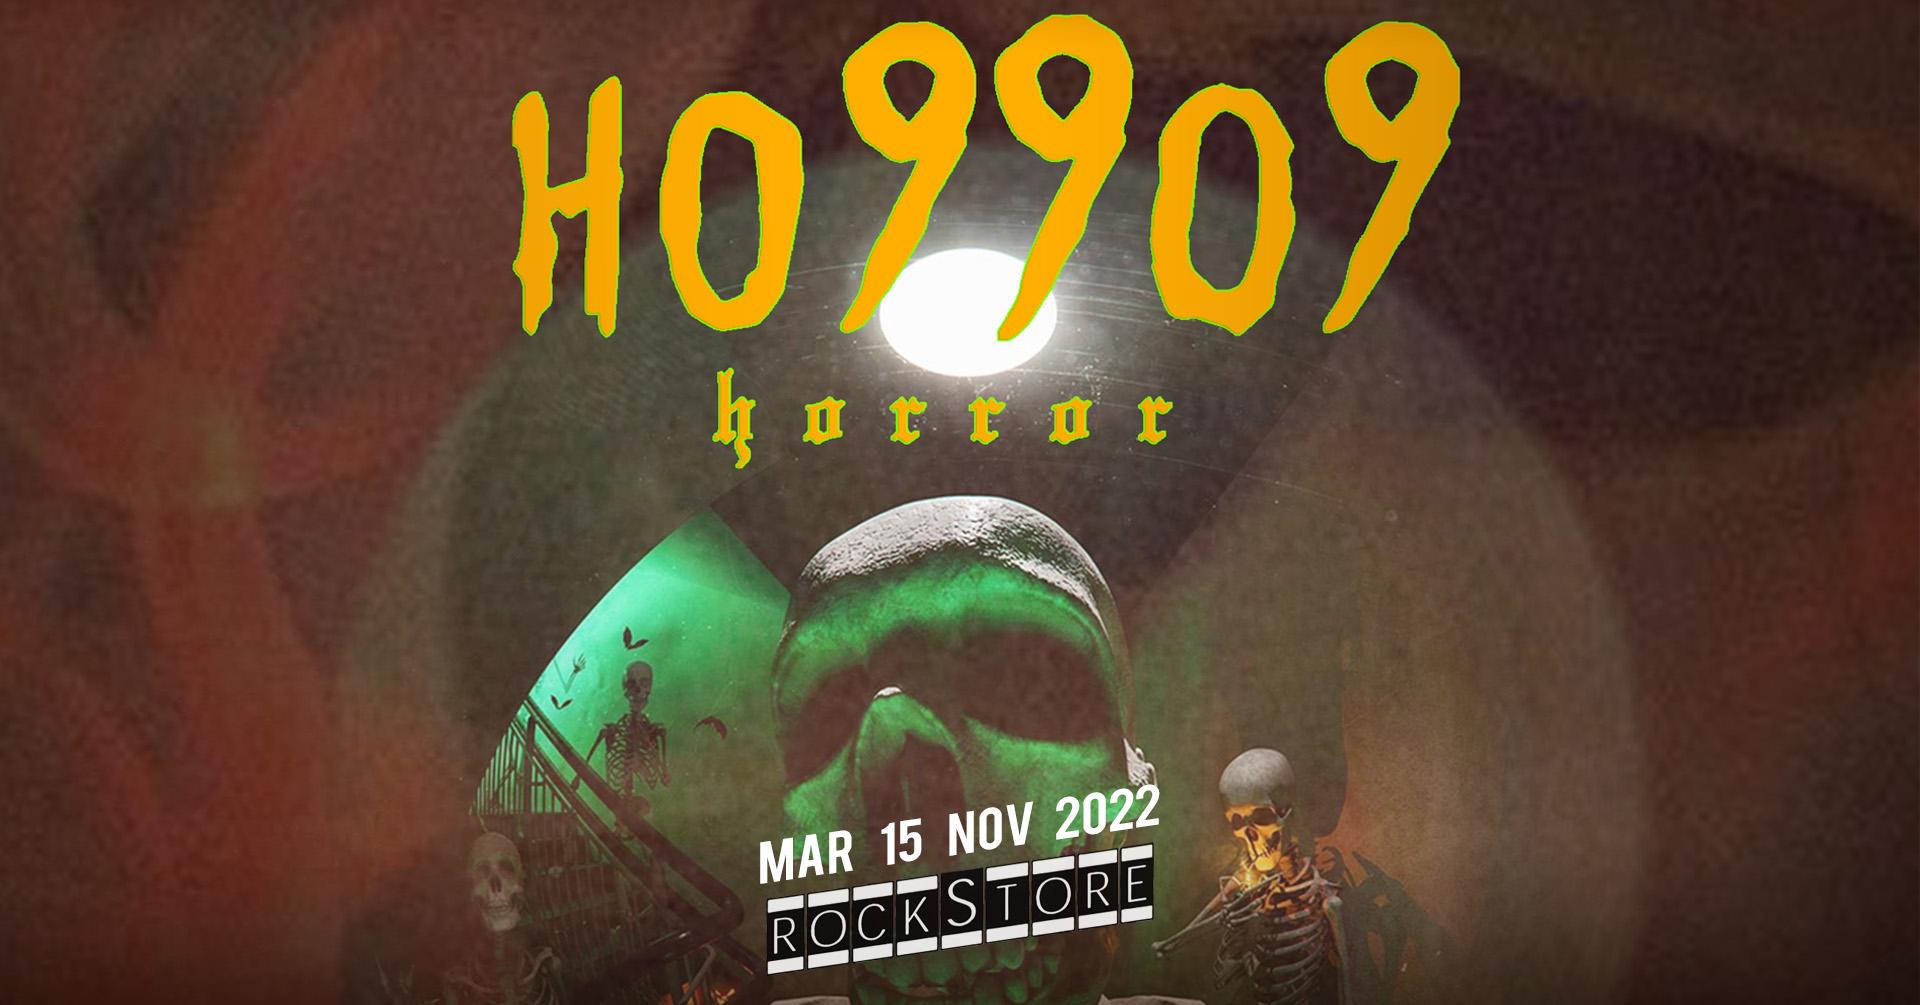 Ho99o9 montpellier 2022